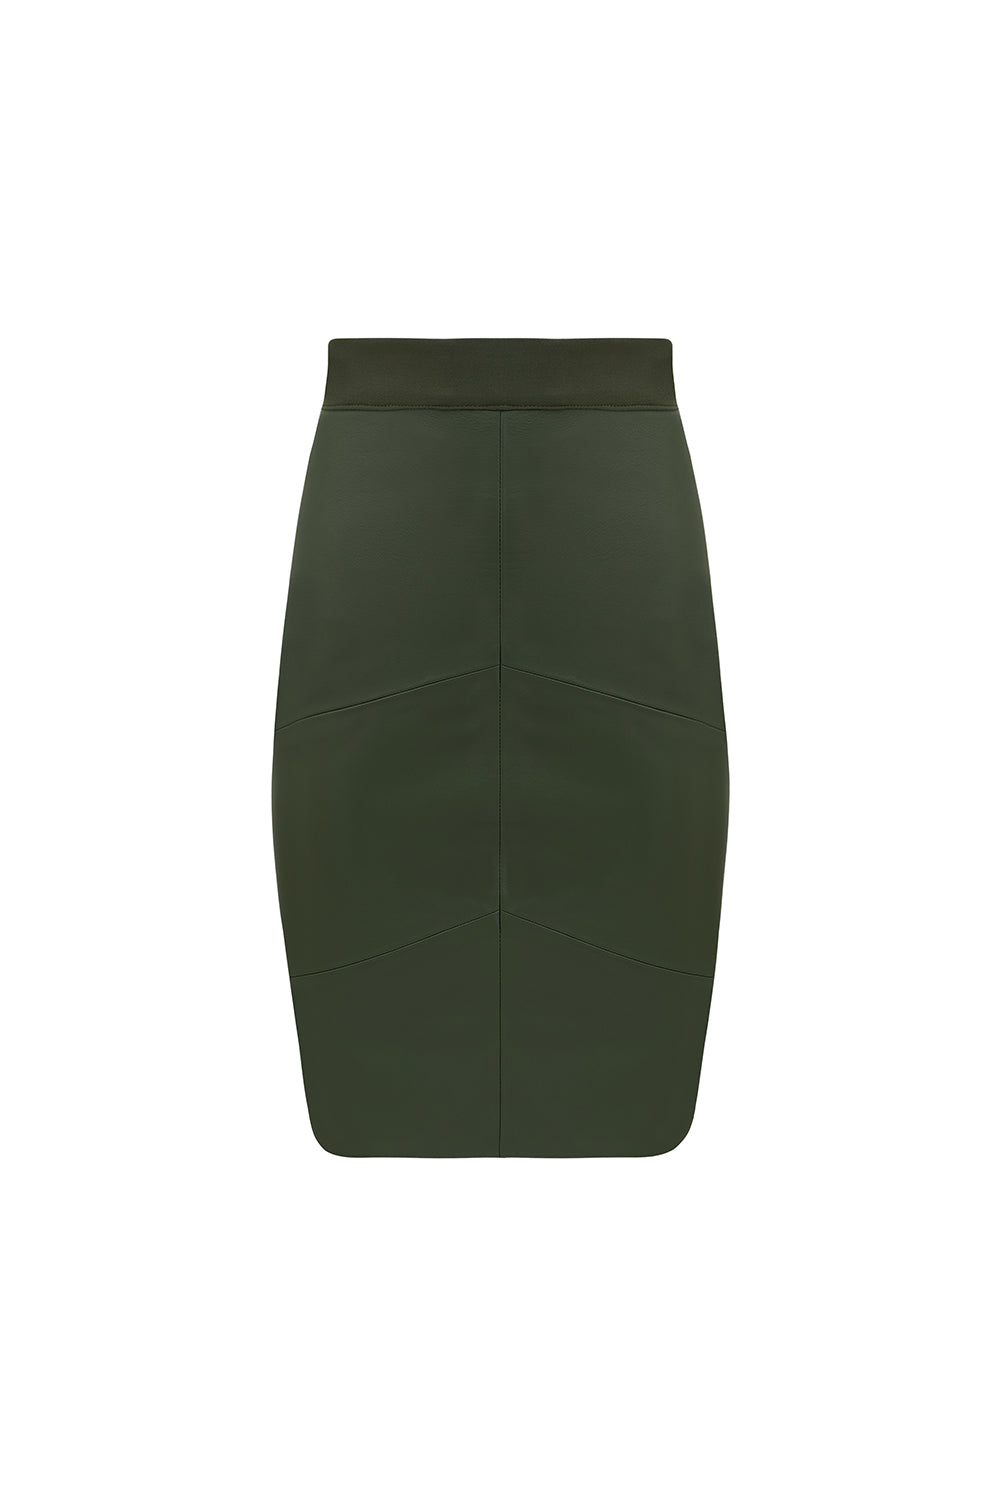 Trivett Skirt - Olive